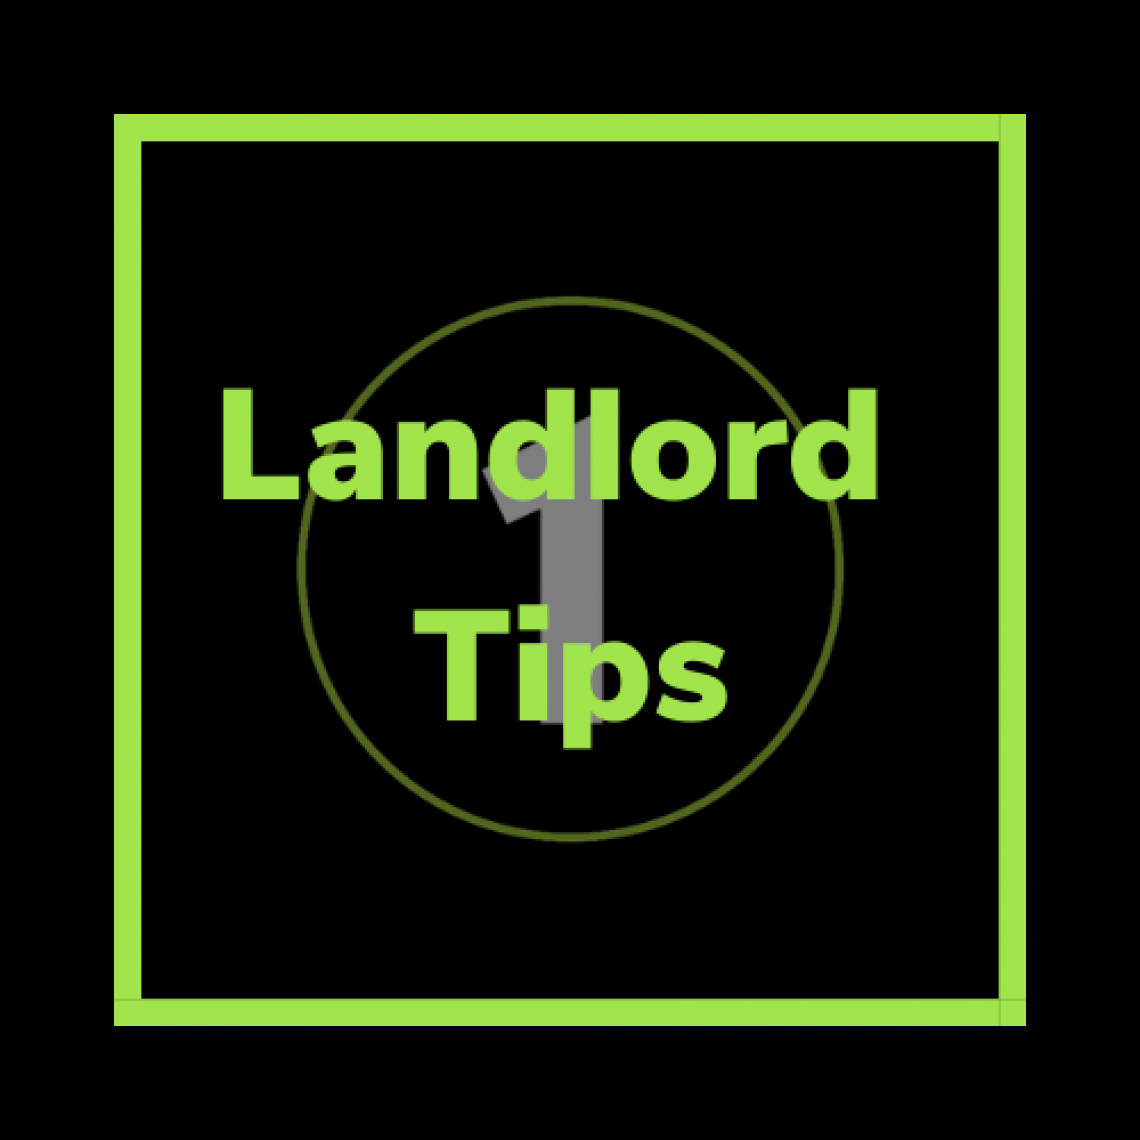 Property Management tips for landlords